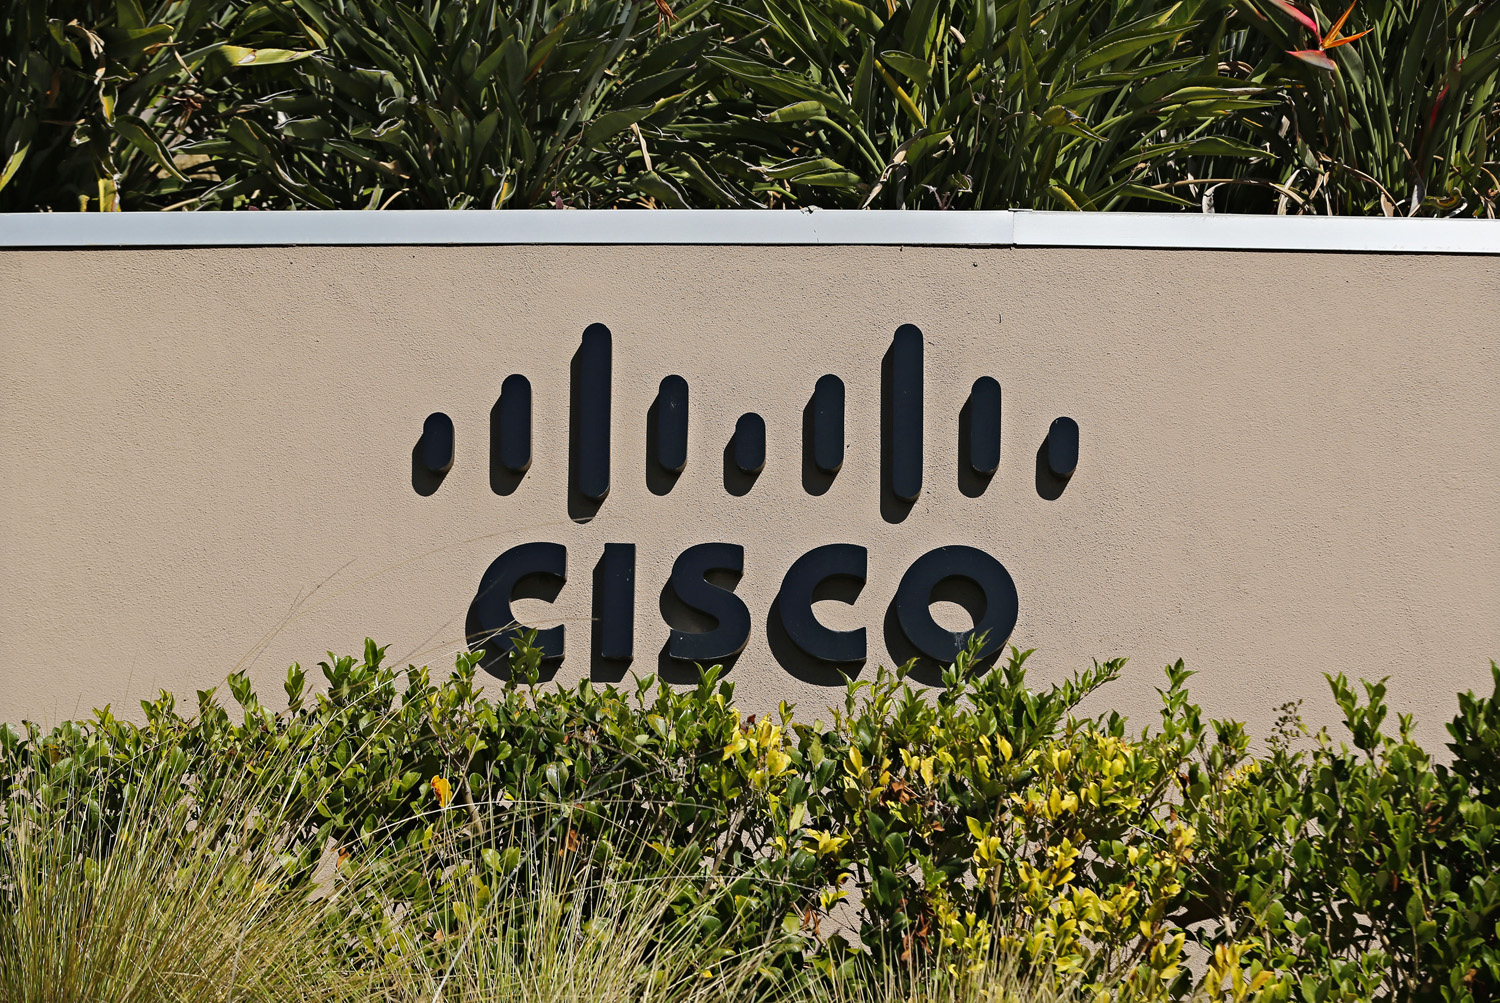 A Cisco irodája San Diegóban - visszavágják a létszámot